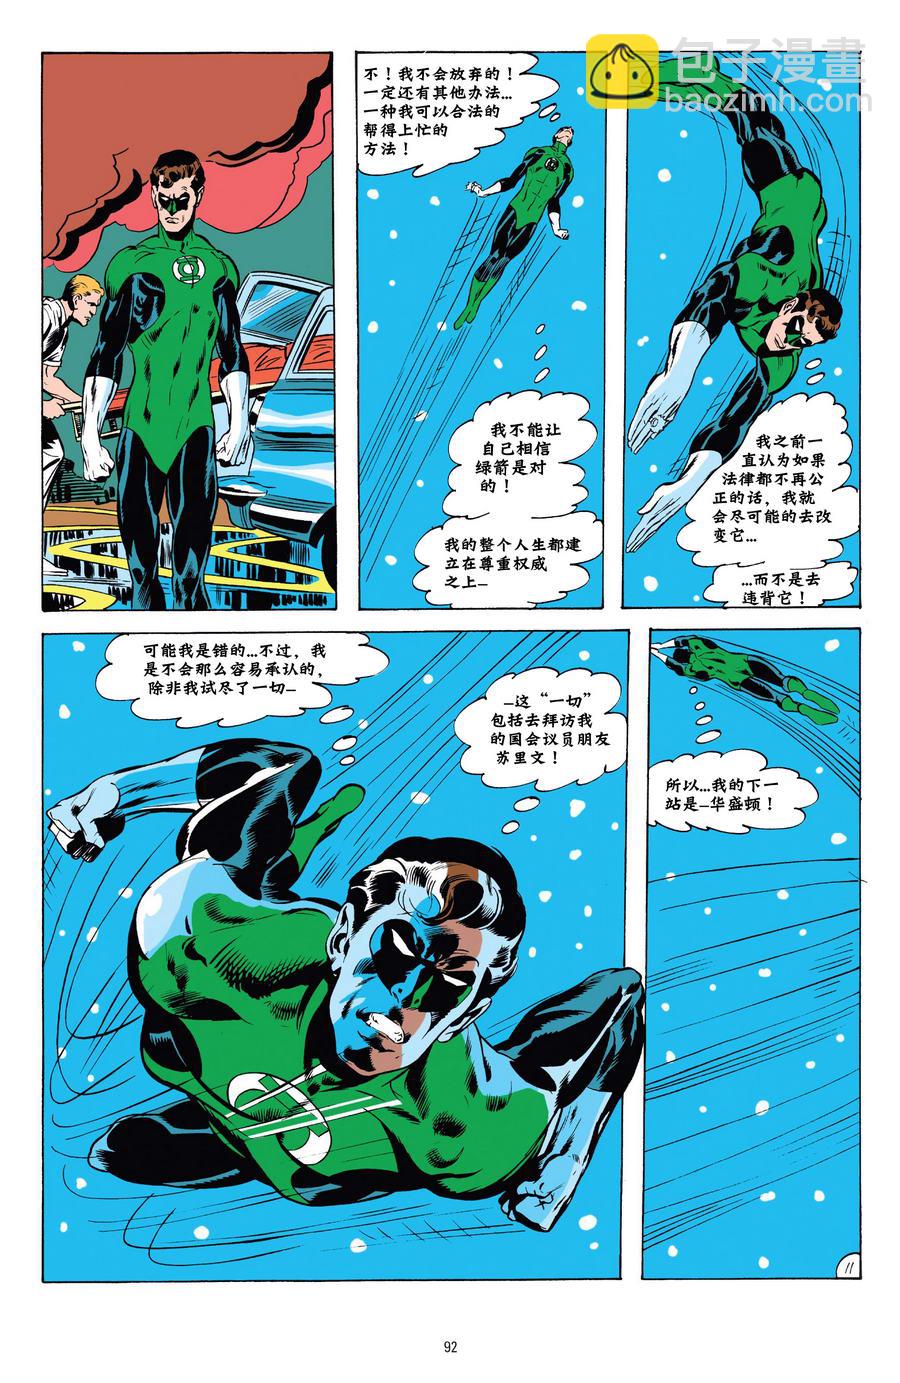 綠燈俠與綠箭俠v1 - 第04卷 - 2